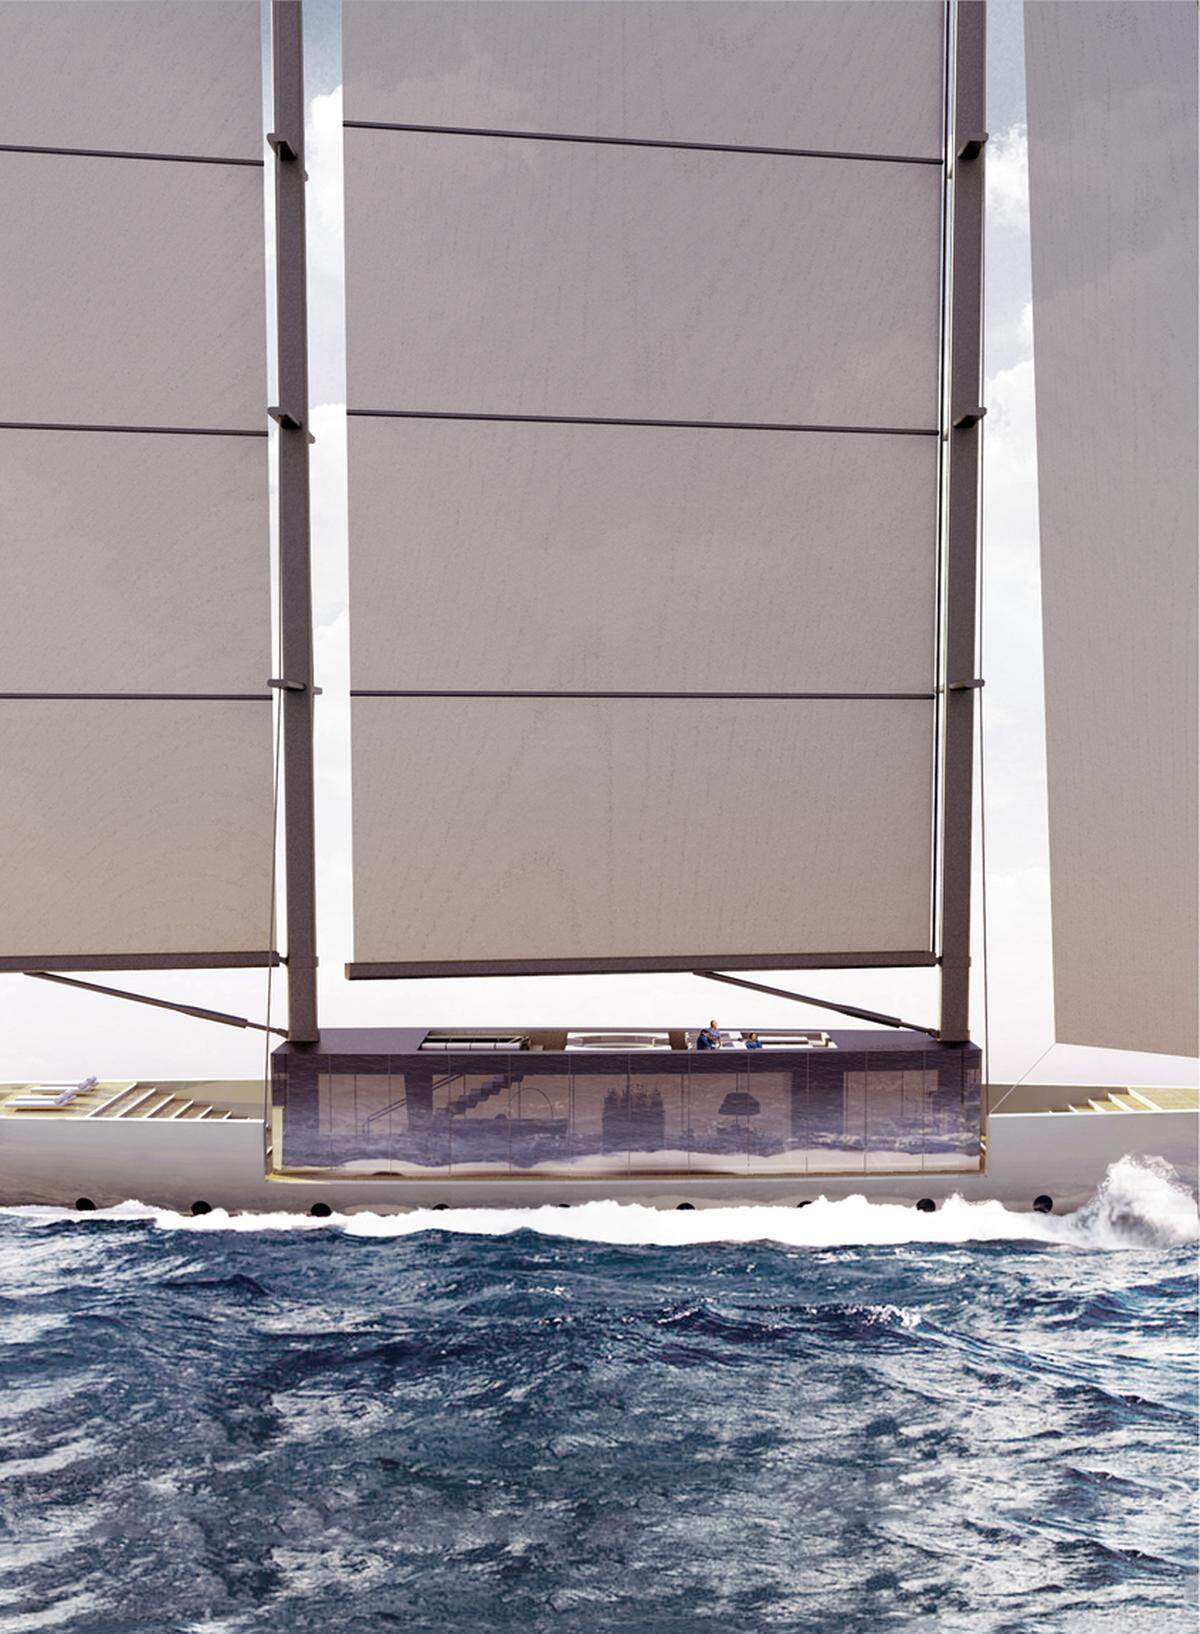 Eine etwas andere Segelyacht hat Jungdesinger Lujac Desautel entworfen. Das 55 Meter lange Boot ist mit einer Art Glasbox ausgestattet mit der man einen Rundumblick hat.